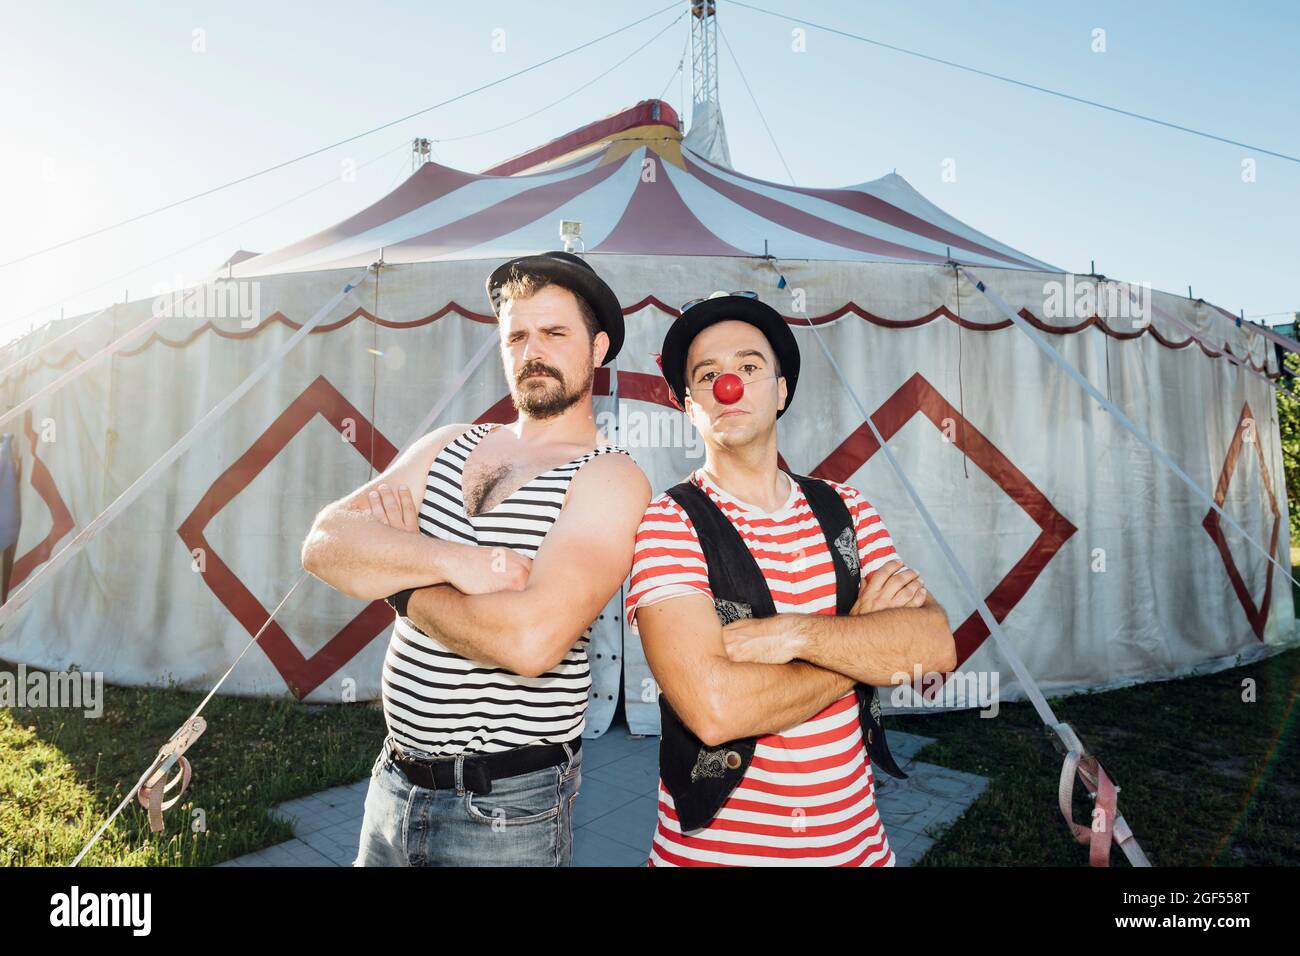 Muscoloso costruire artista in piedi con le braccia attraversate da clown di fronte alla tenda del circo Foto Stock